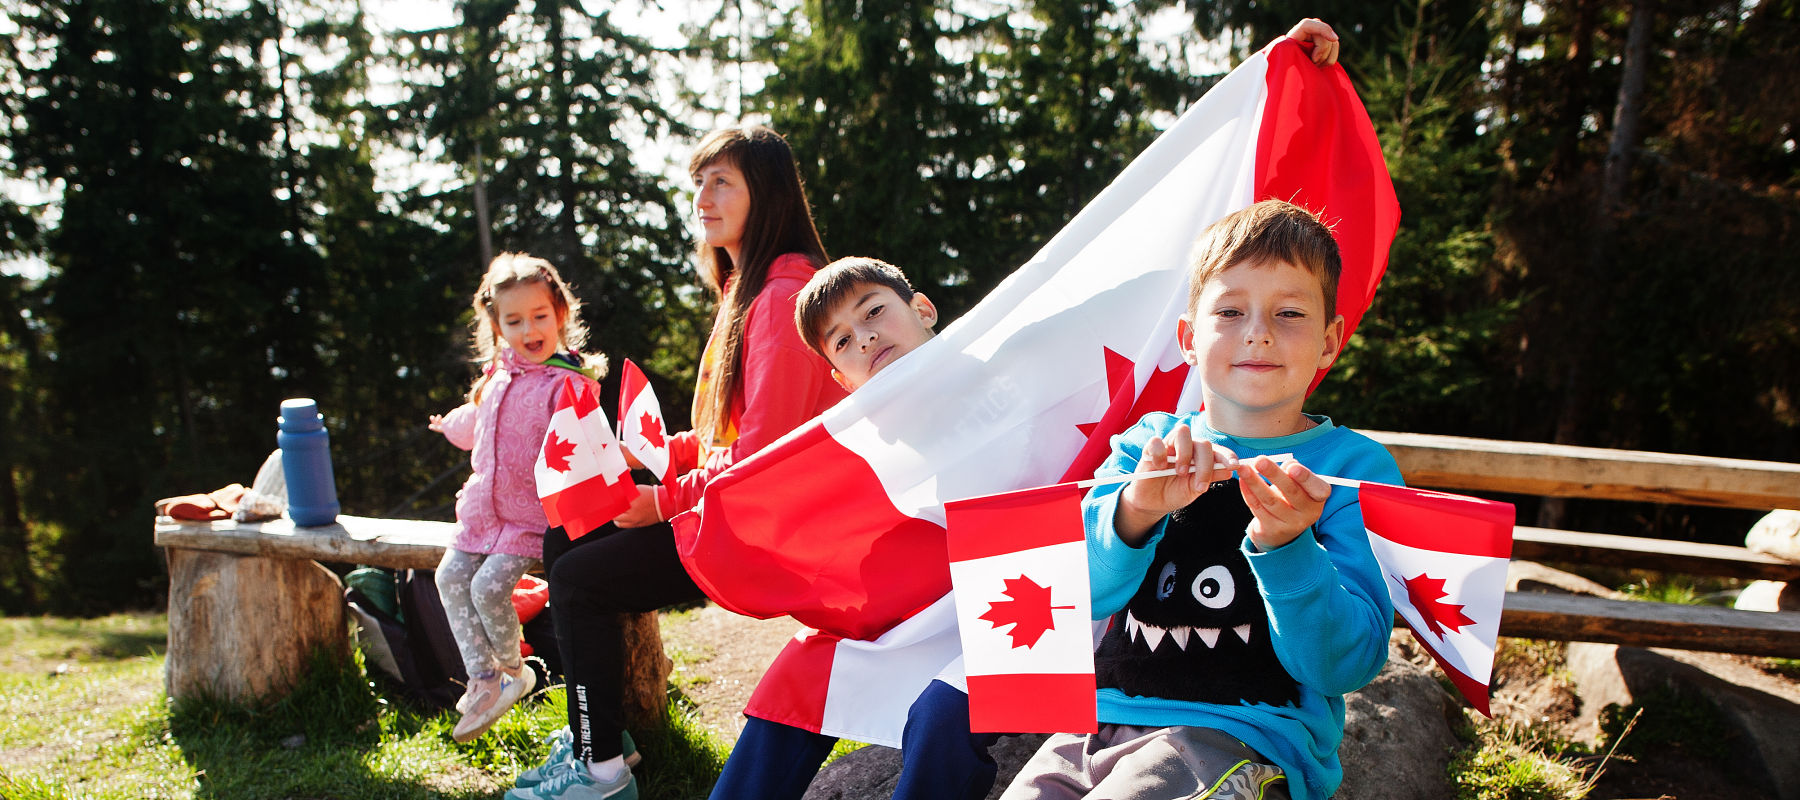 🍁 Happy Canada Day Everyone!